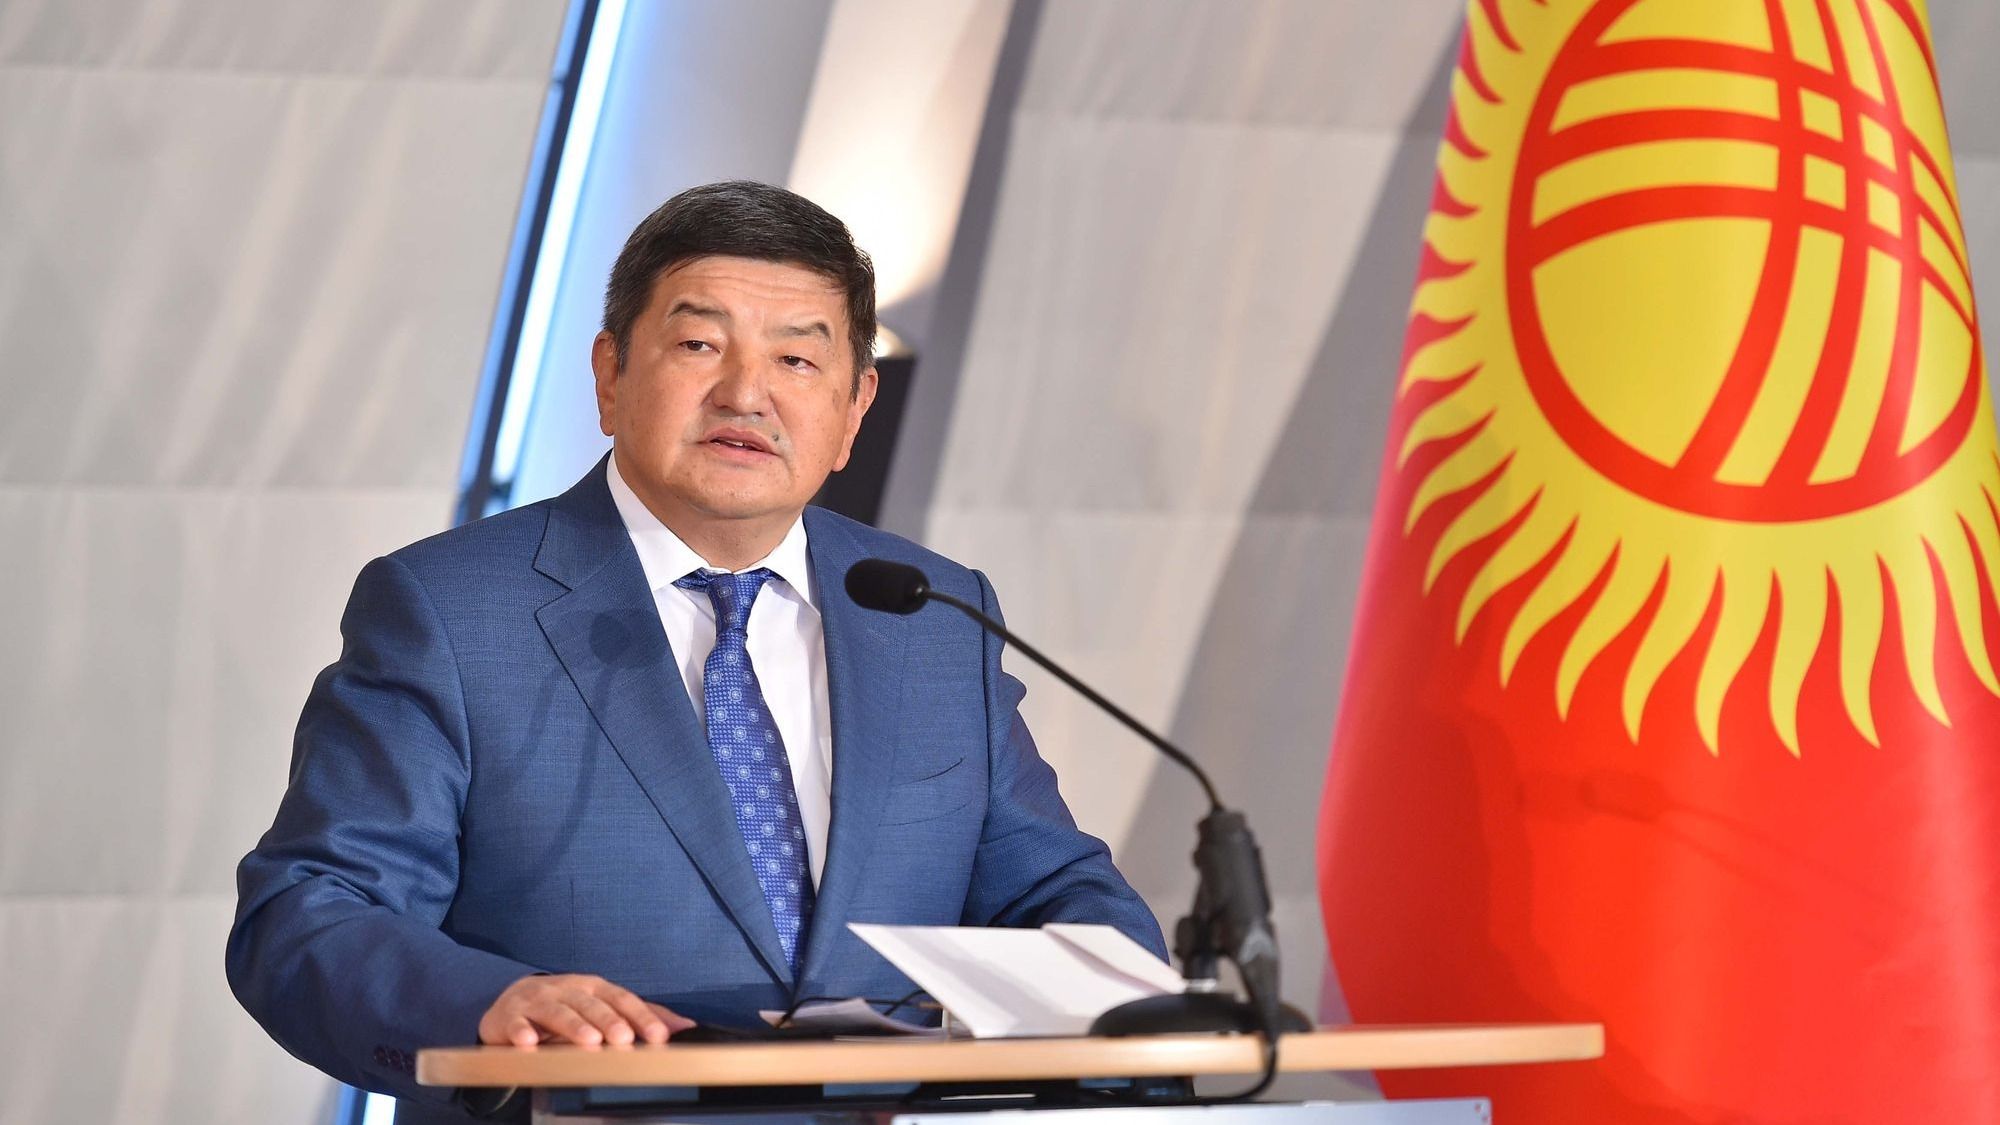 Акылбек Жапаров пригласил немецкий бизнес создавать в Кыргызстане системообразующие предприятия